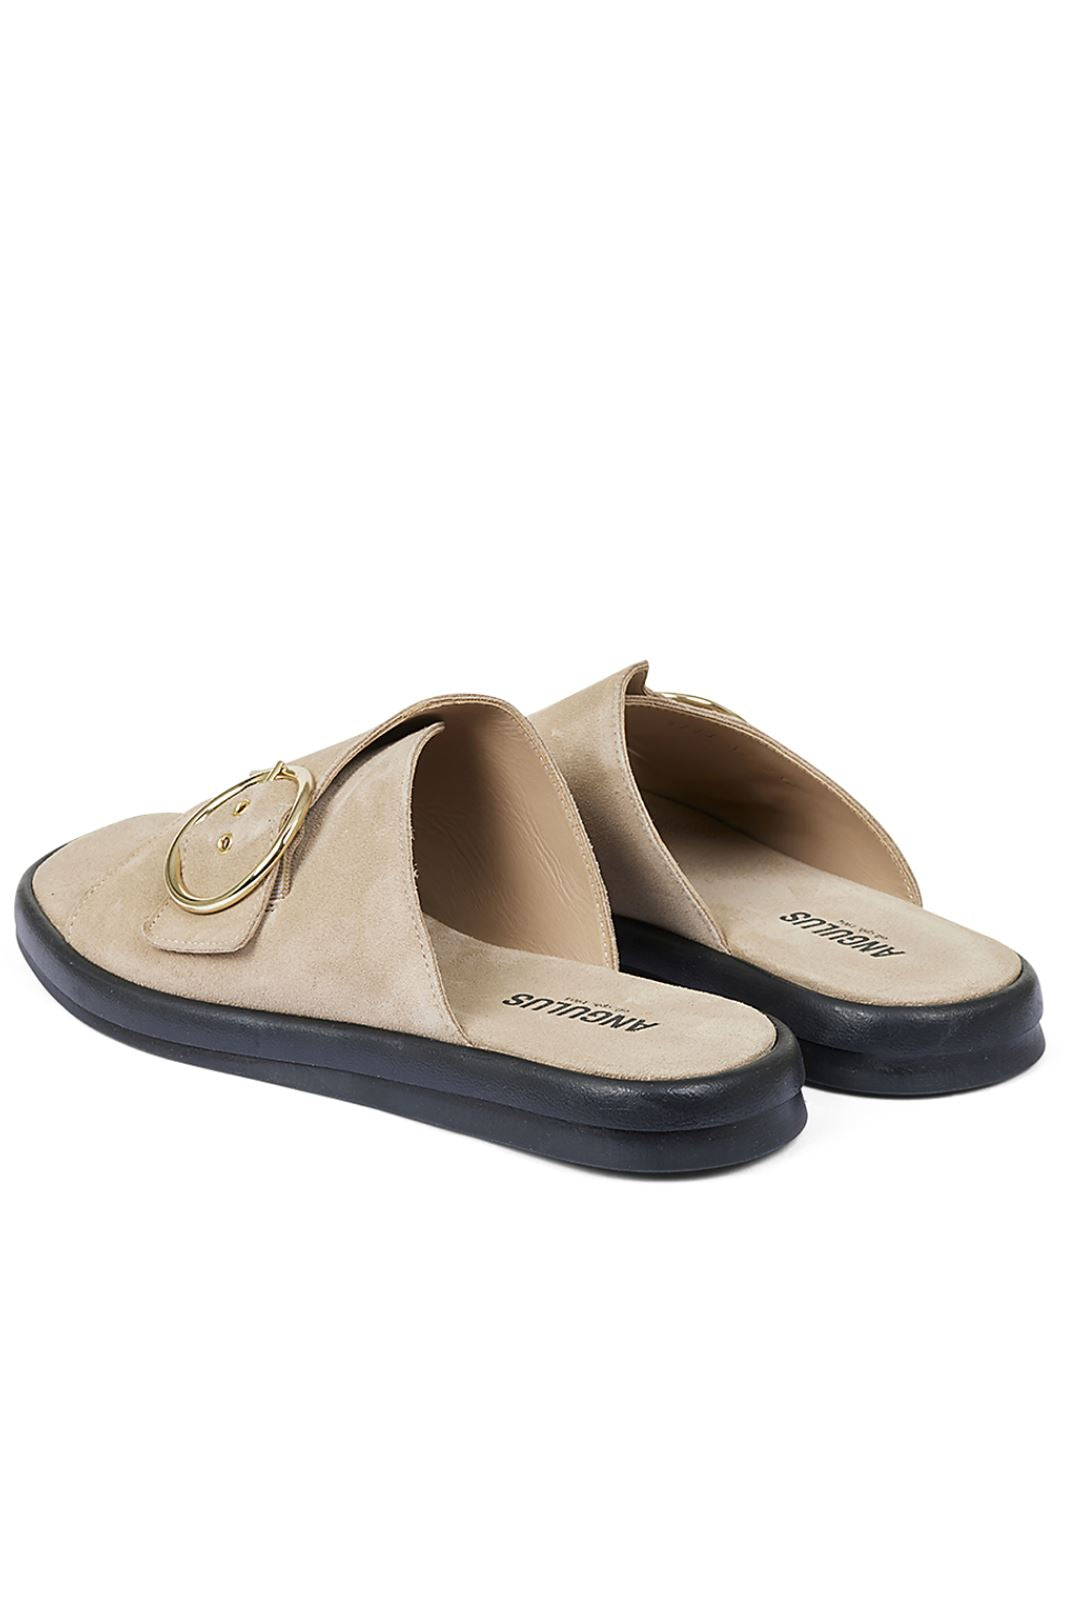 Angulus - Flad sandal - 2240 2240 Sand Sandaler 